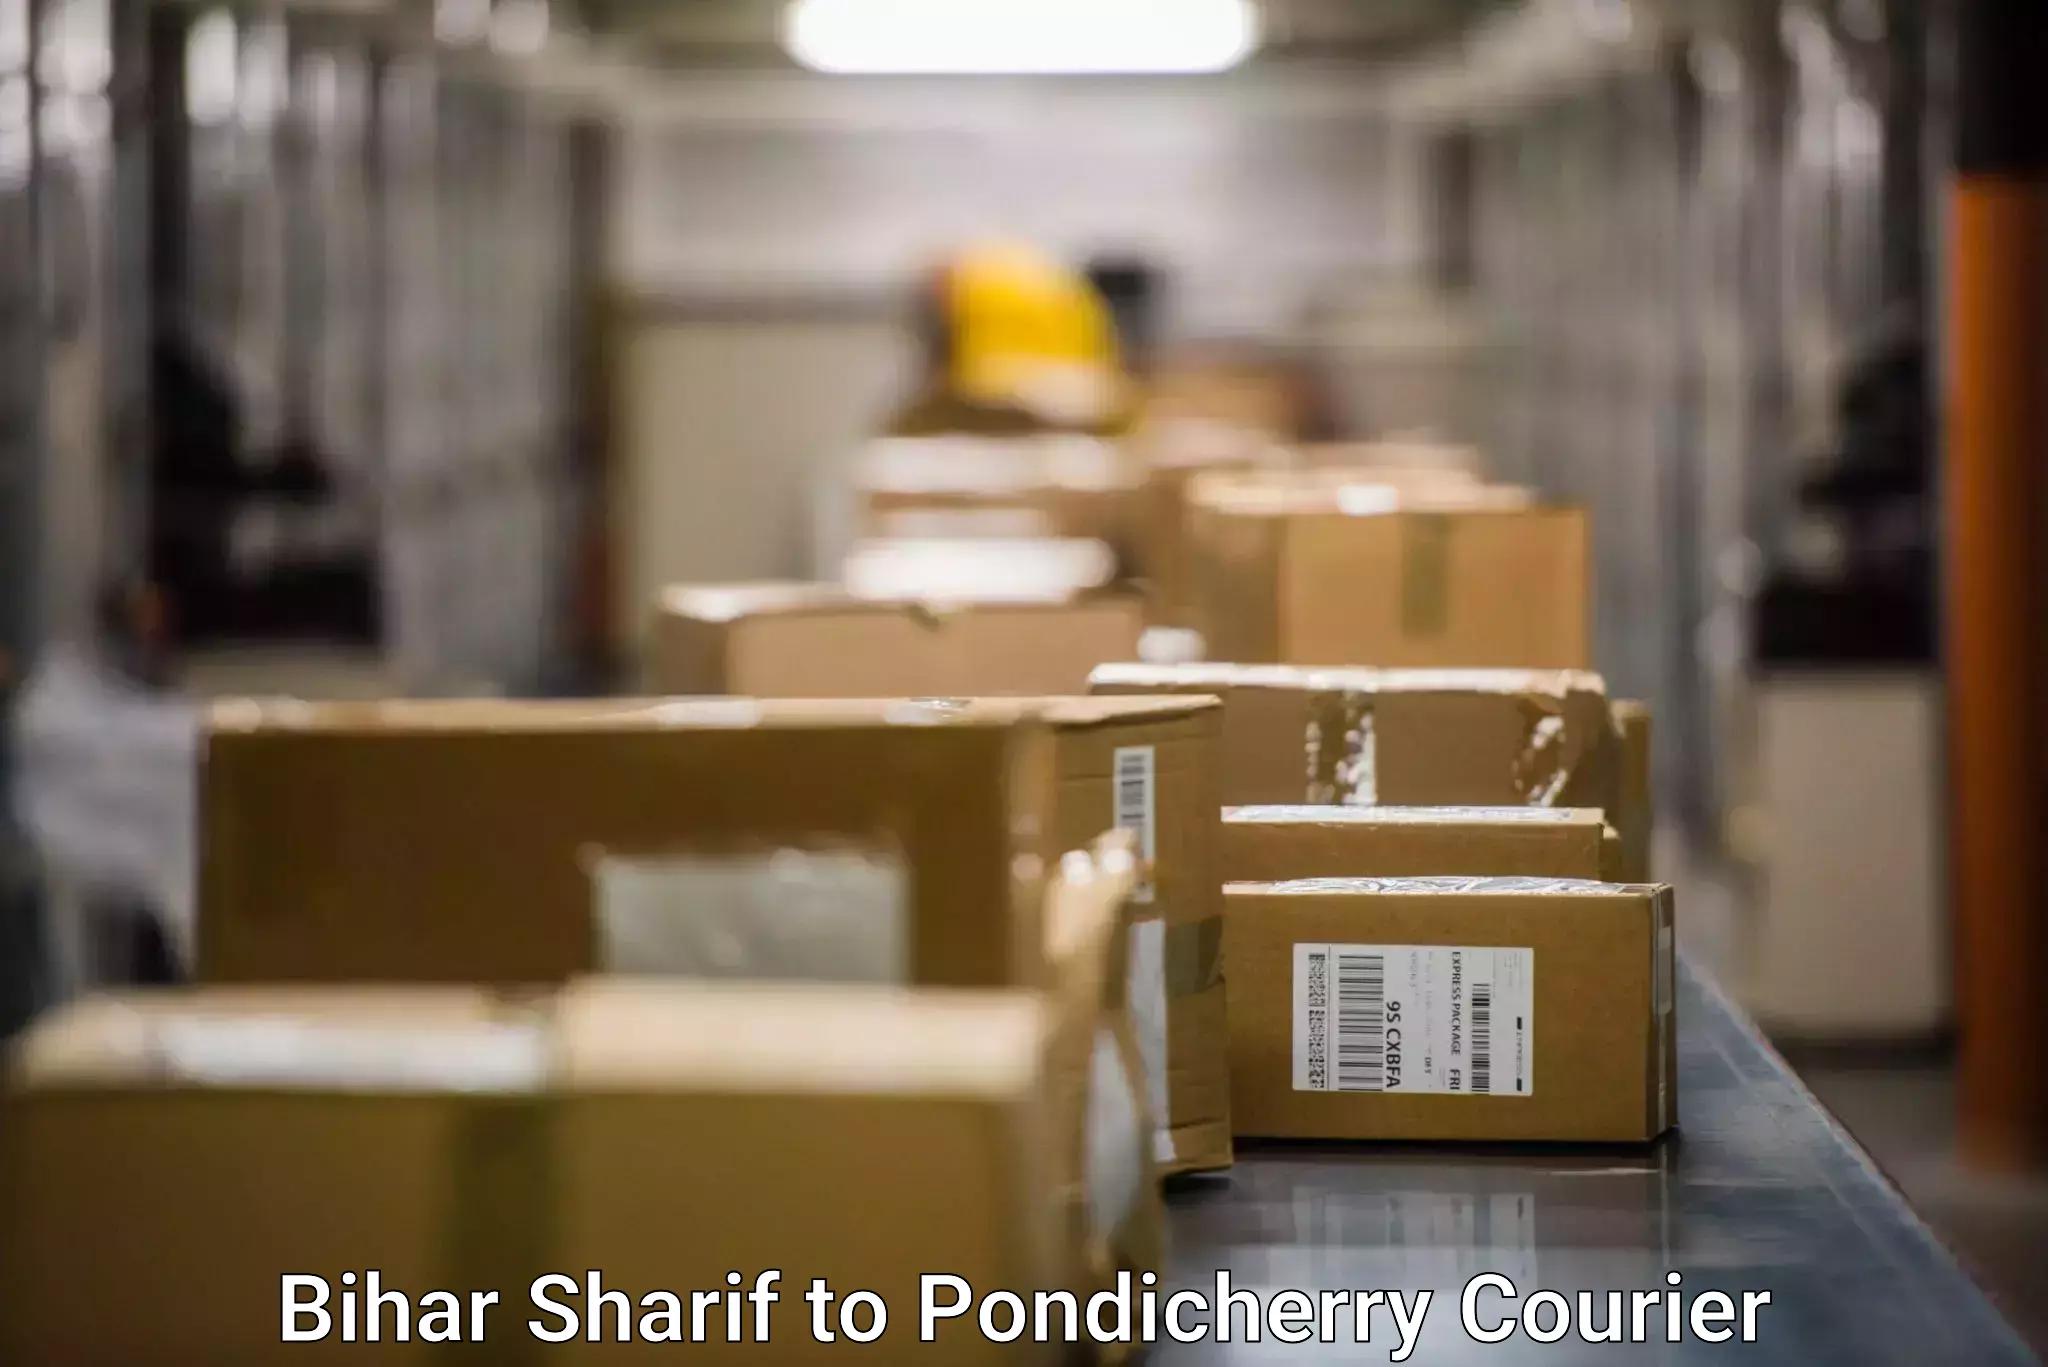 24-hour courier service in Bihar Sharif to Pondicherry University